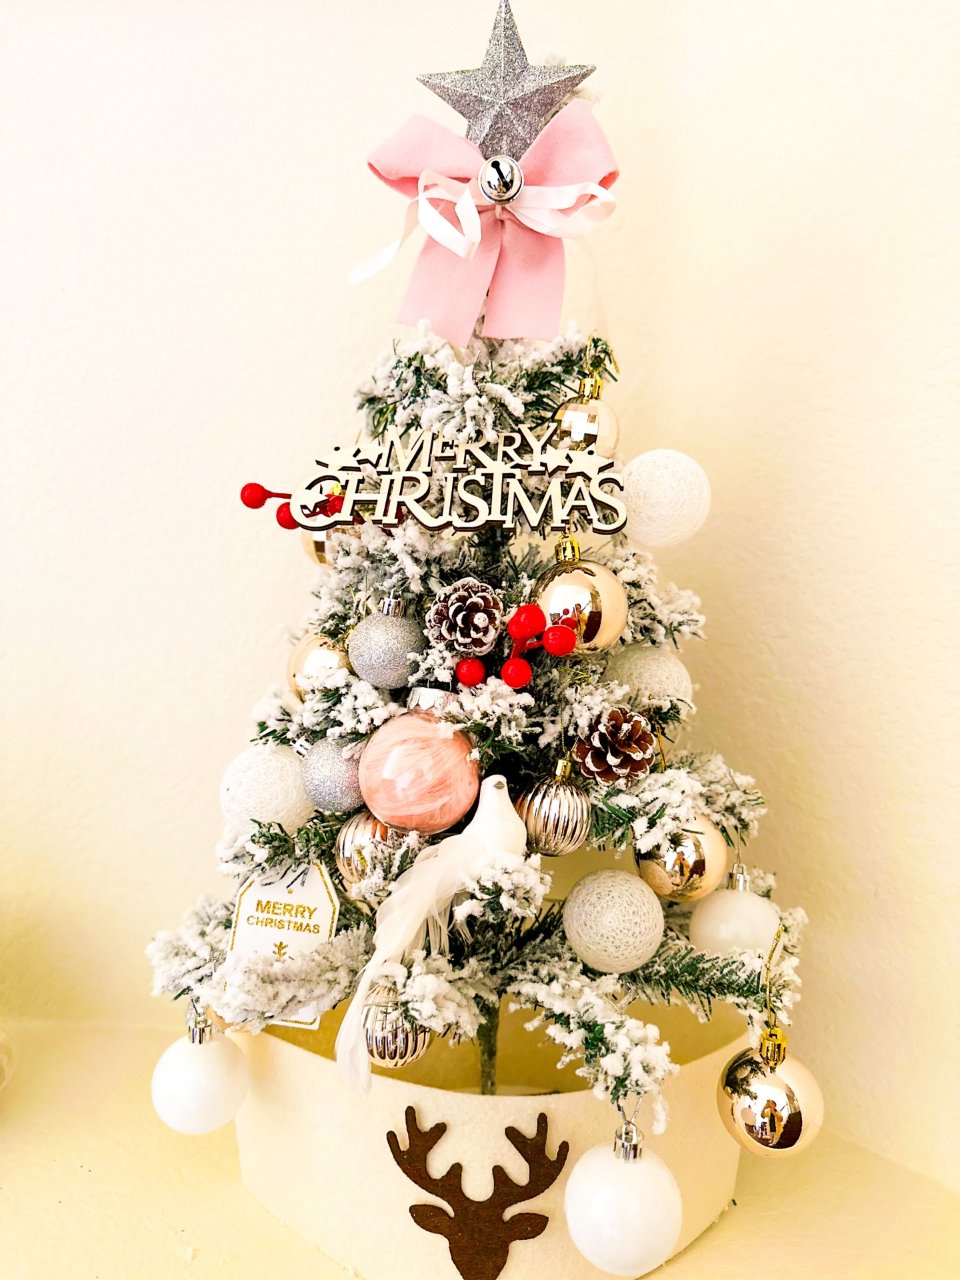 我的mini粉色雪松圣诞树🎄好漂亮😍...